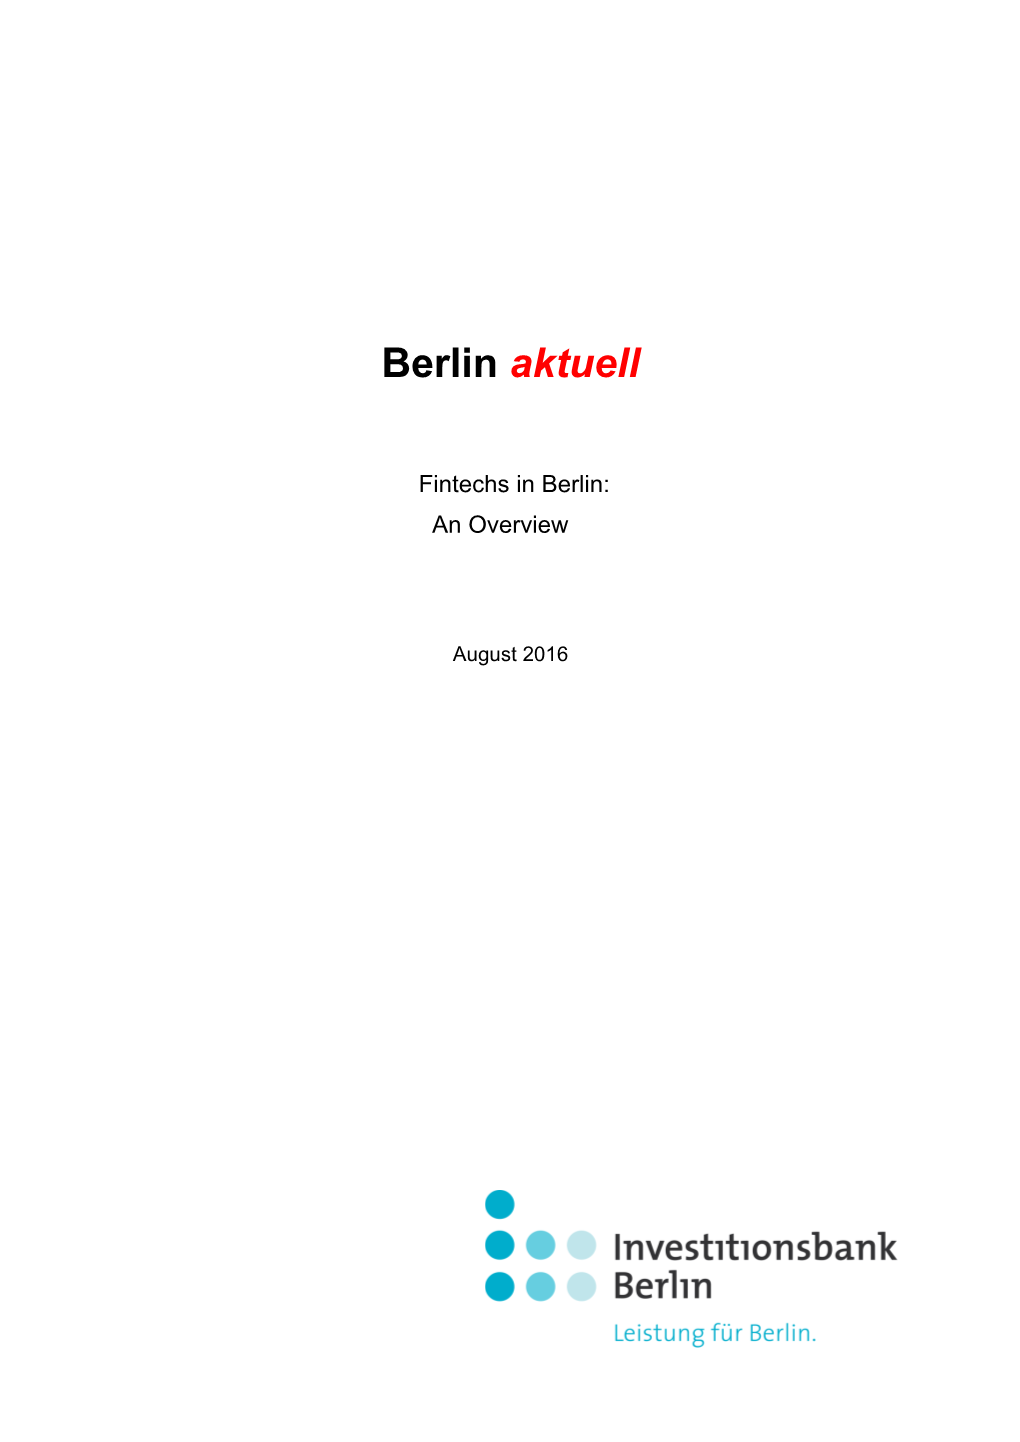 Berlin Aktuell: Fintechs in Berlin